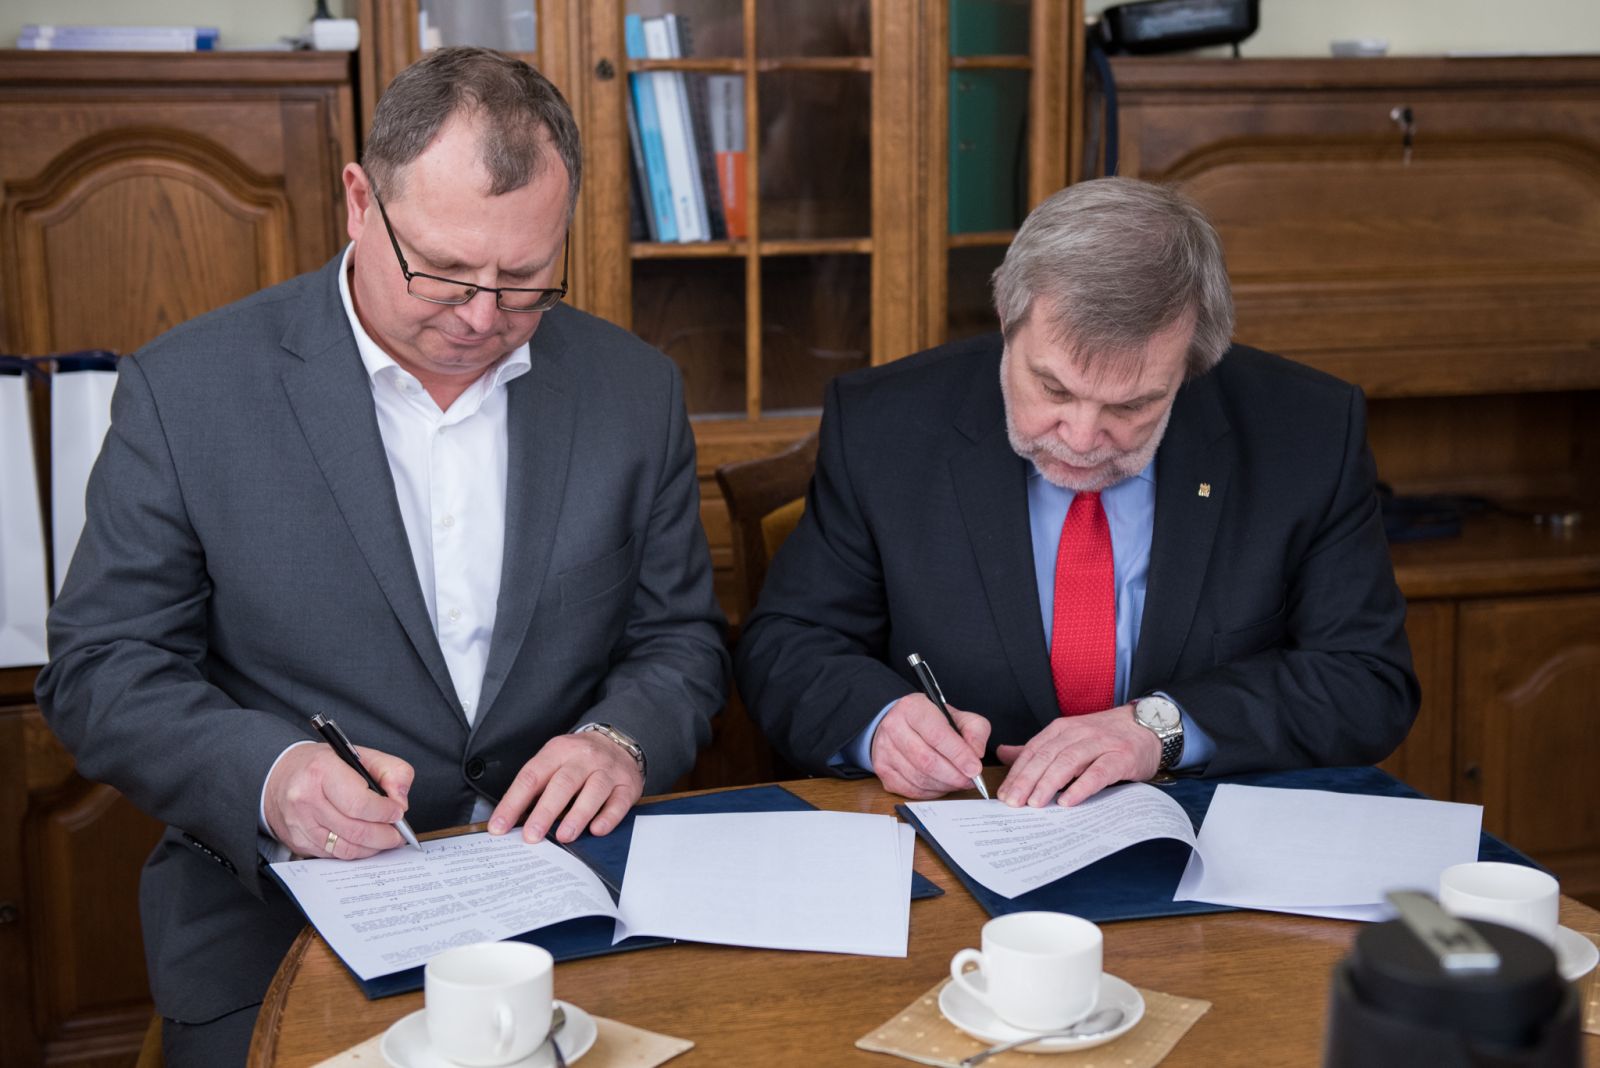 Umowę podpisał Prorektor ds. informatyzacji oraz współpracy z otoczeniem społeczno-gospodarczym, prof. UAM dr hab. Marek Nawrocki